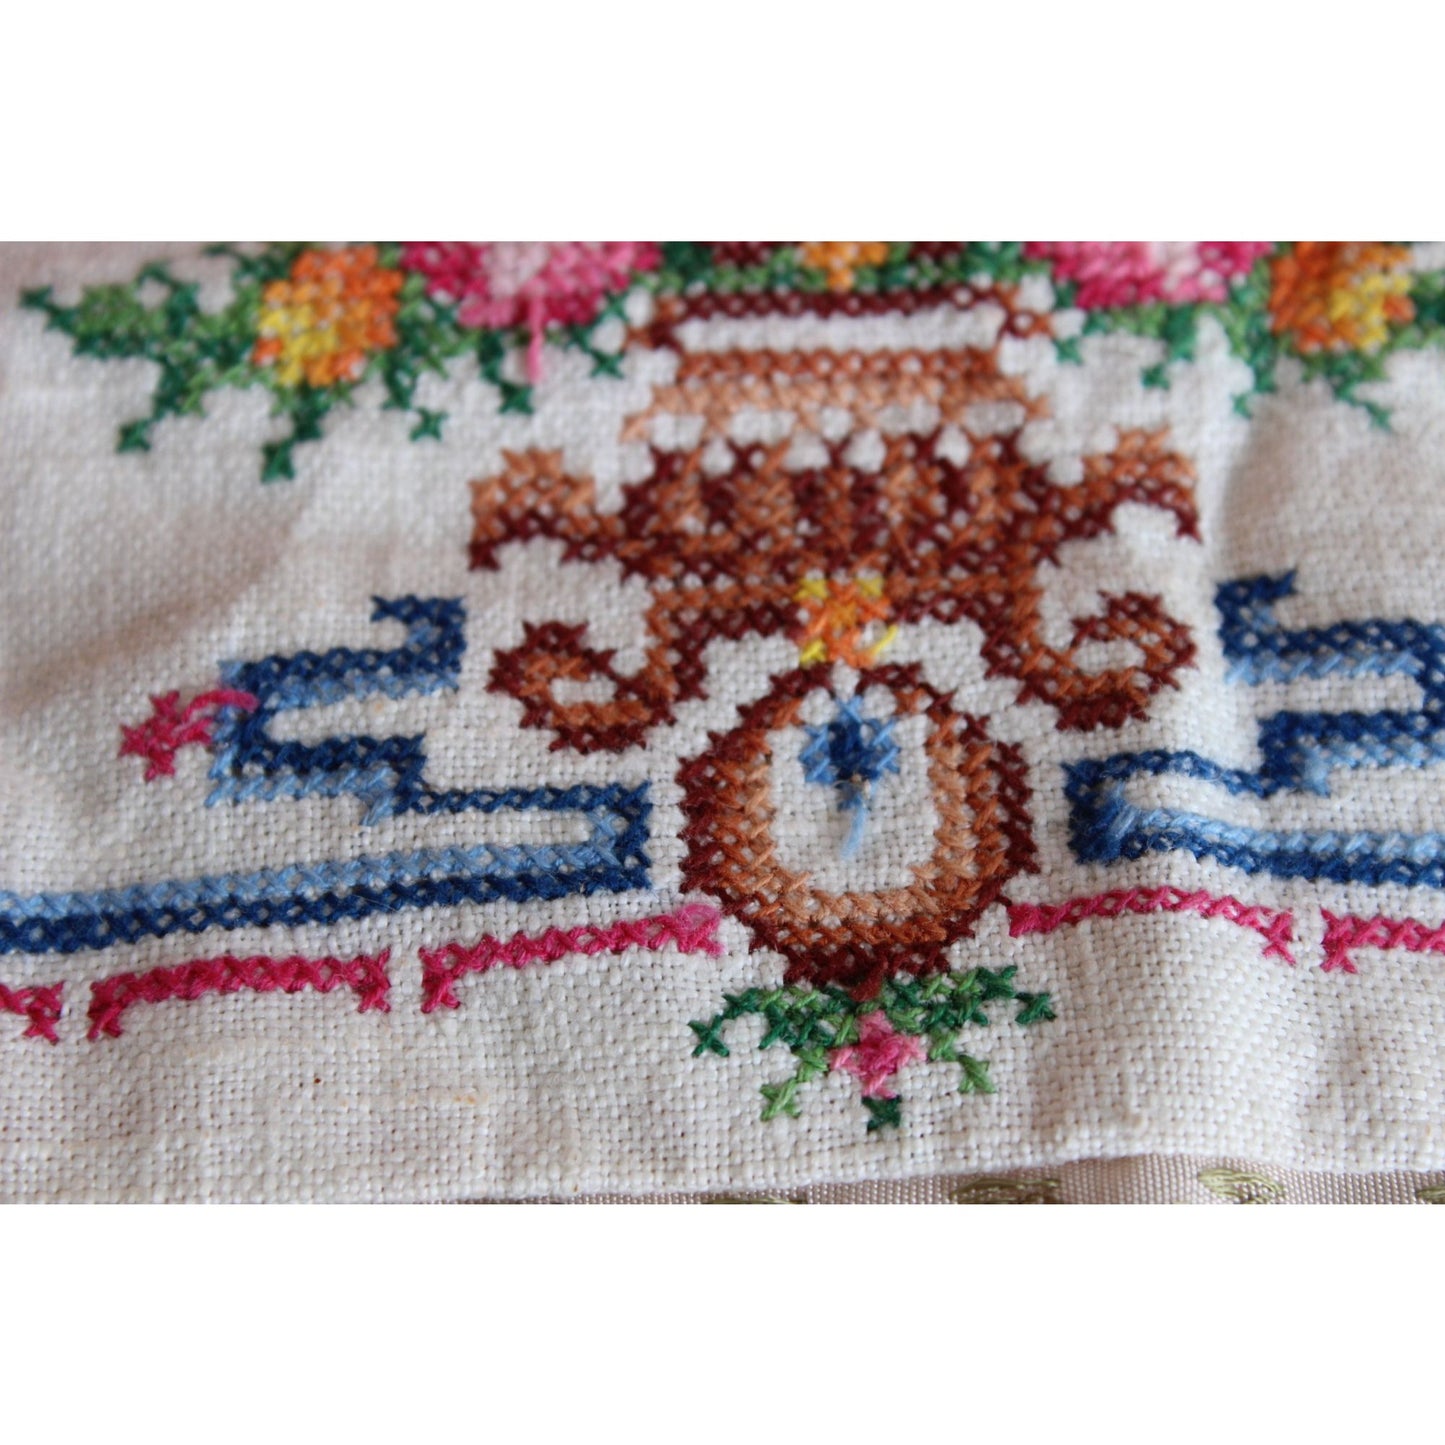 Vintage 1950s Cross Stitch Lace Trim Pillowcase End